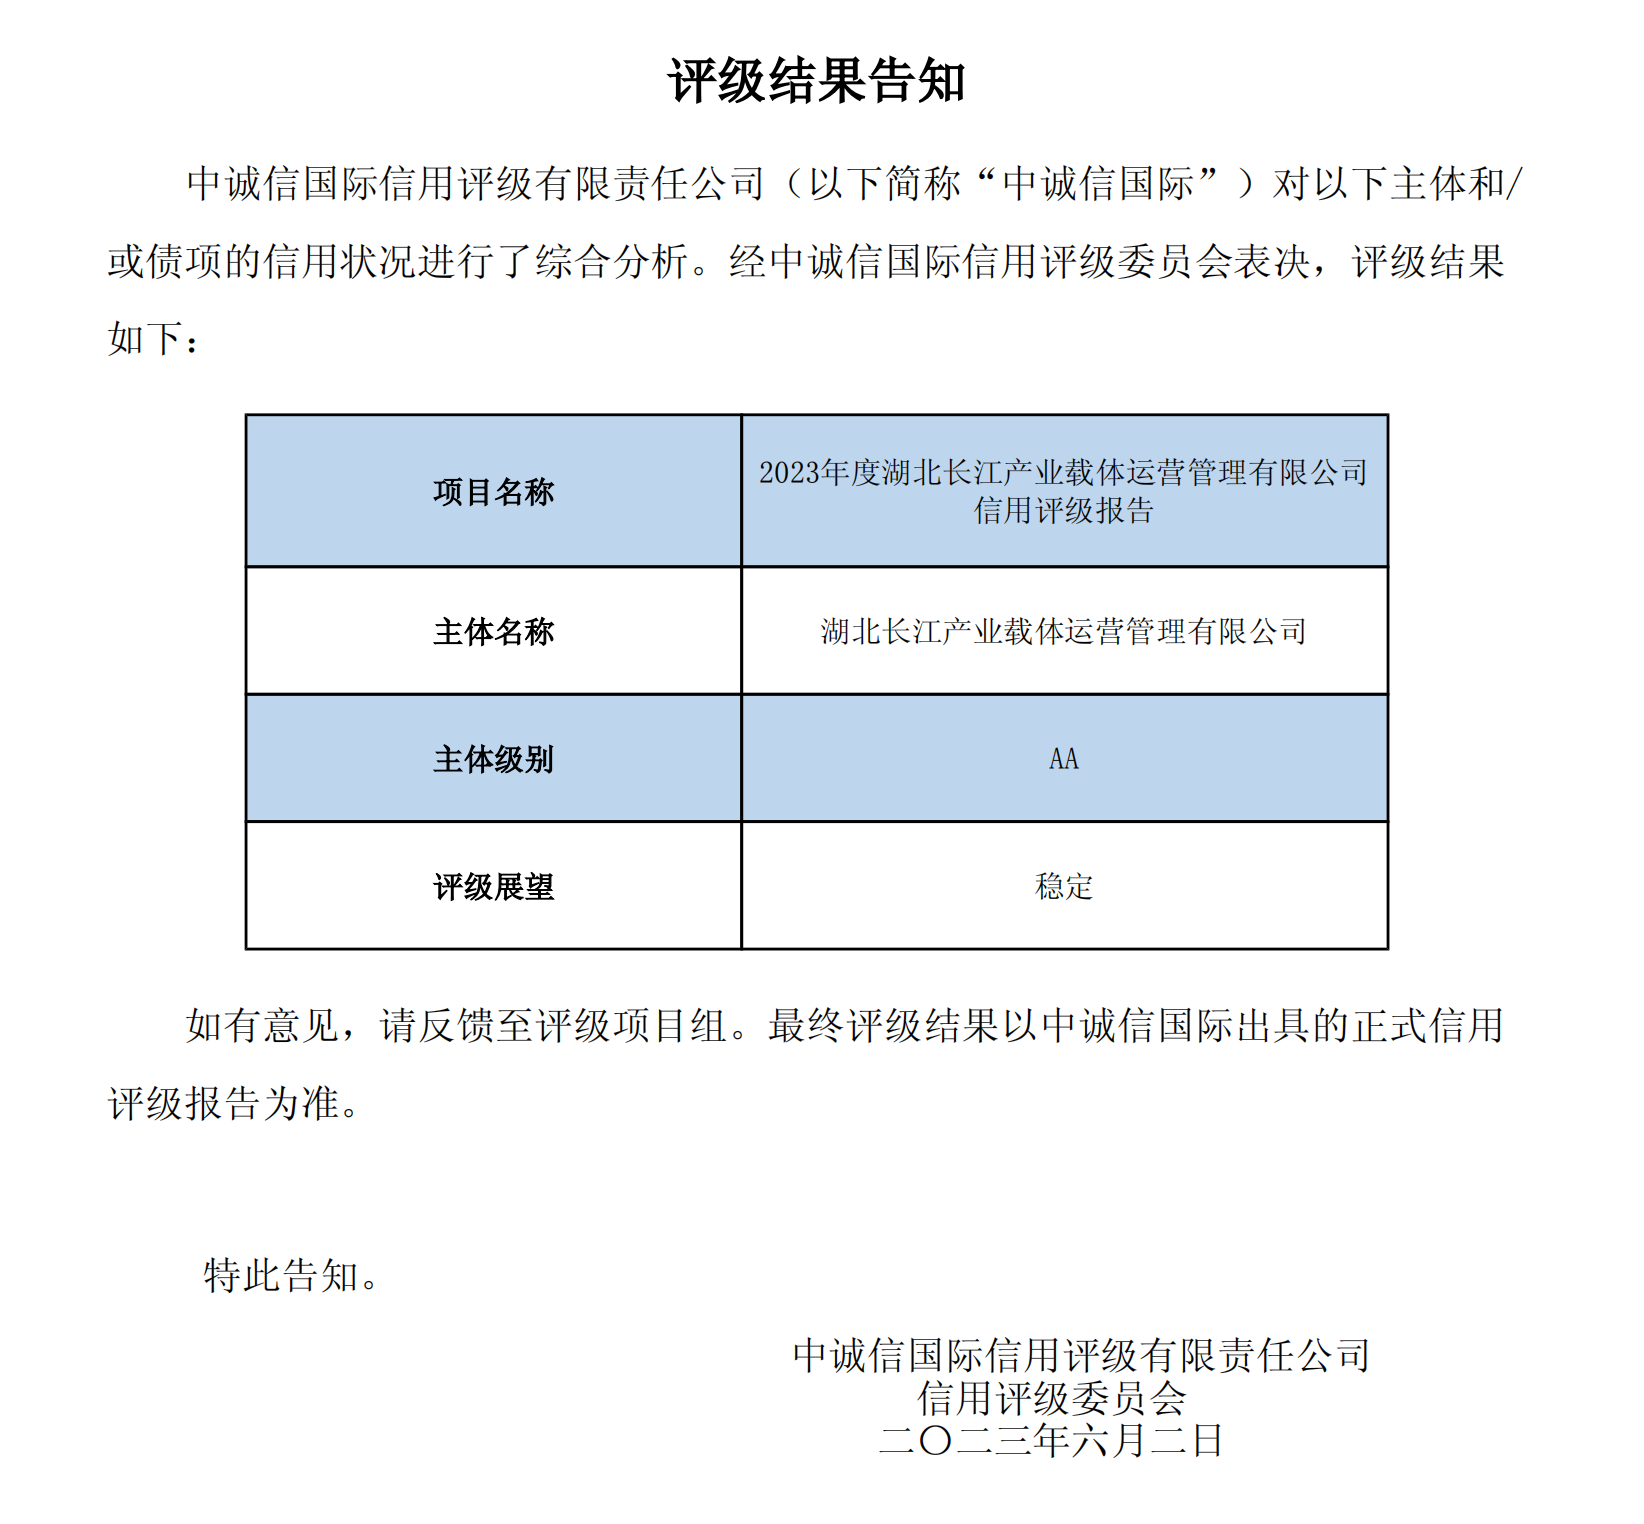 2023年度湖北长江产业载体运营管理有限公司信用评级报告评级结果告知函(3)_00.png